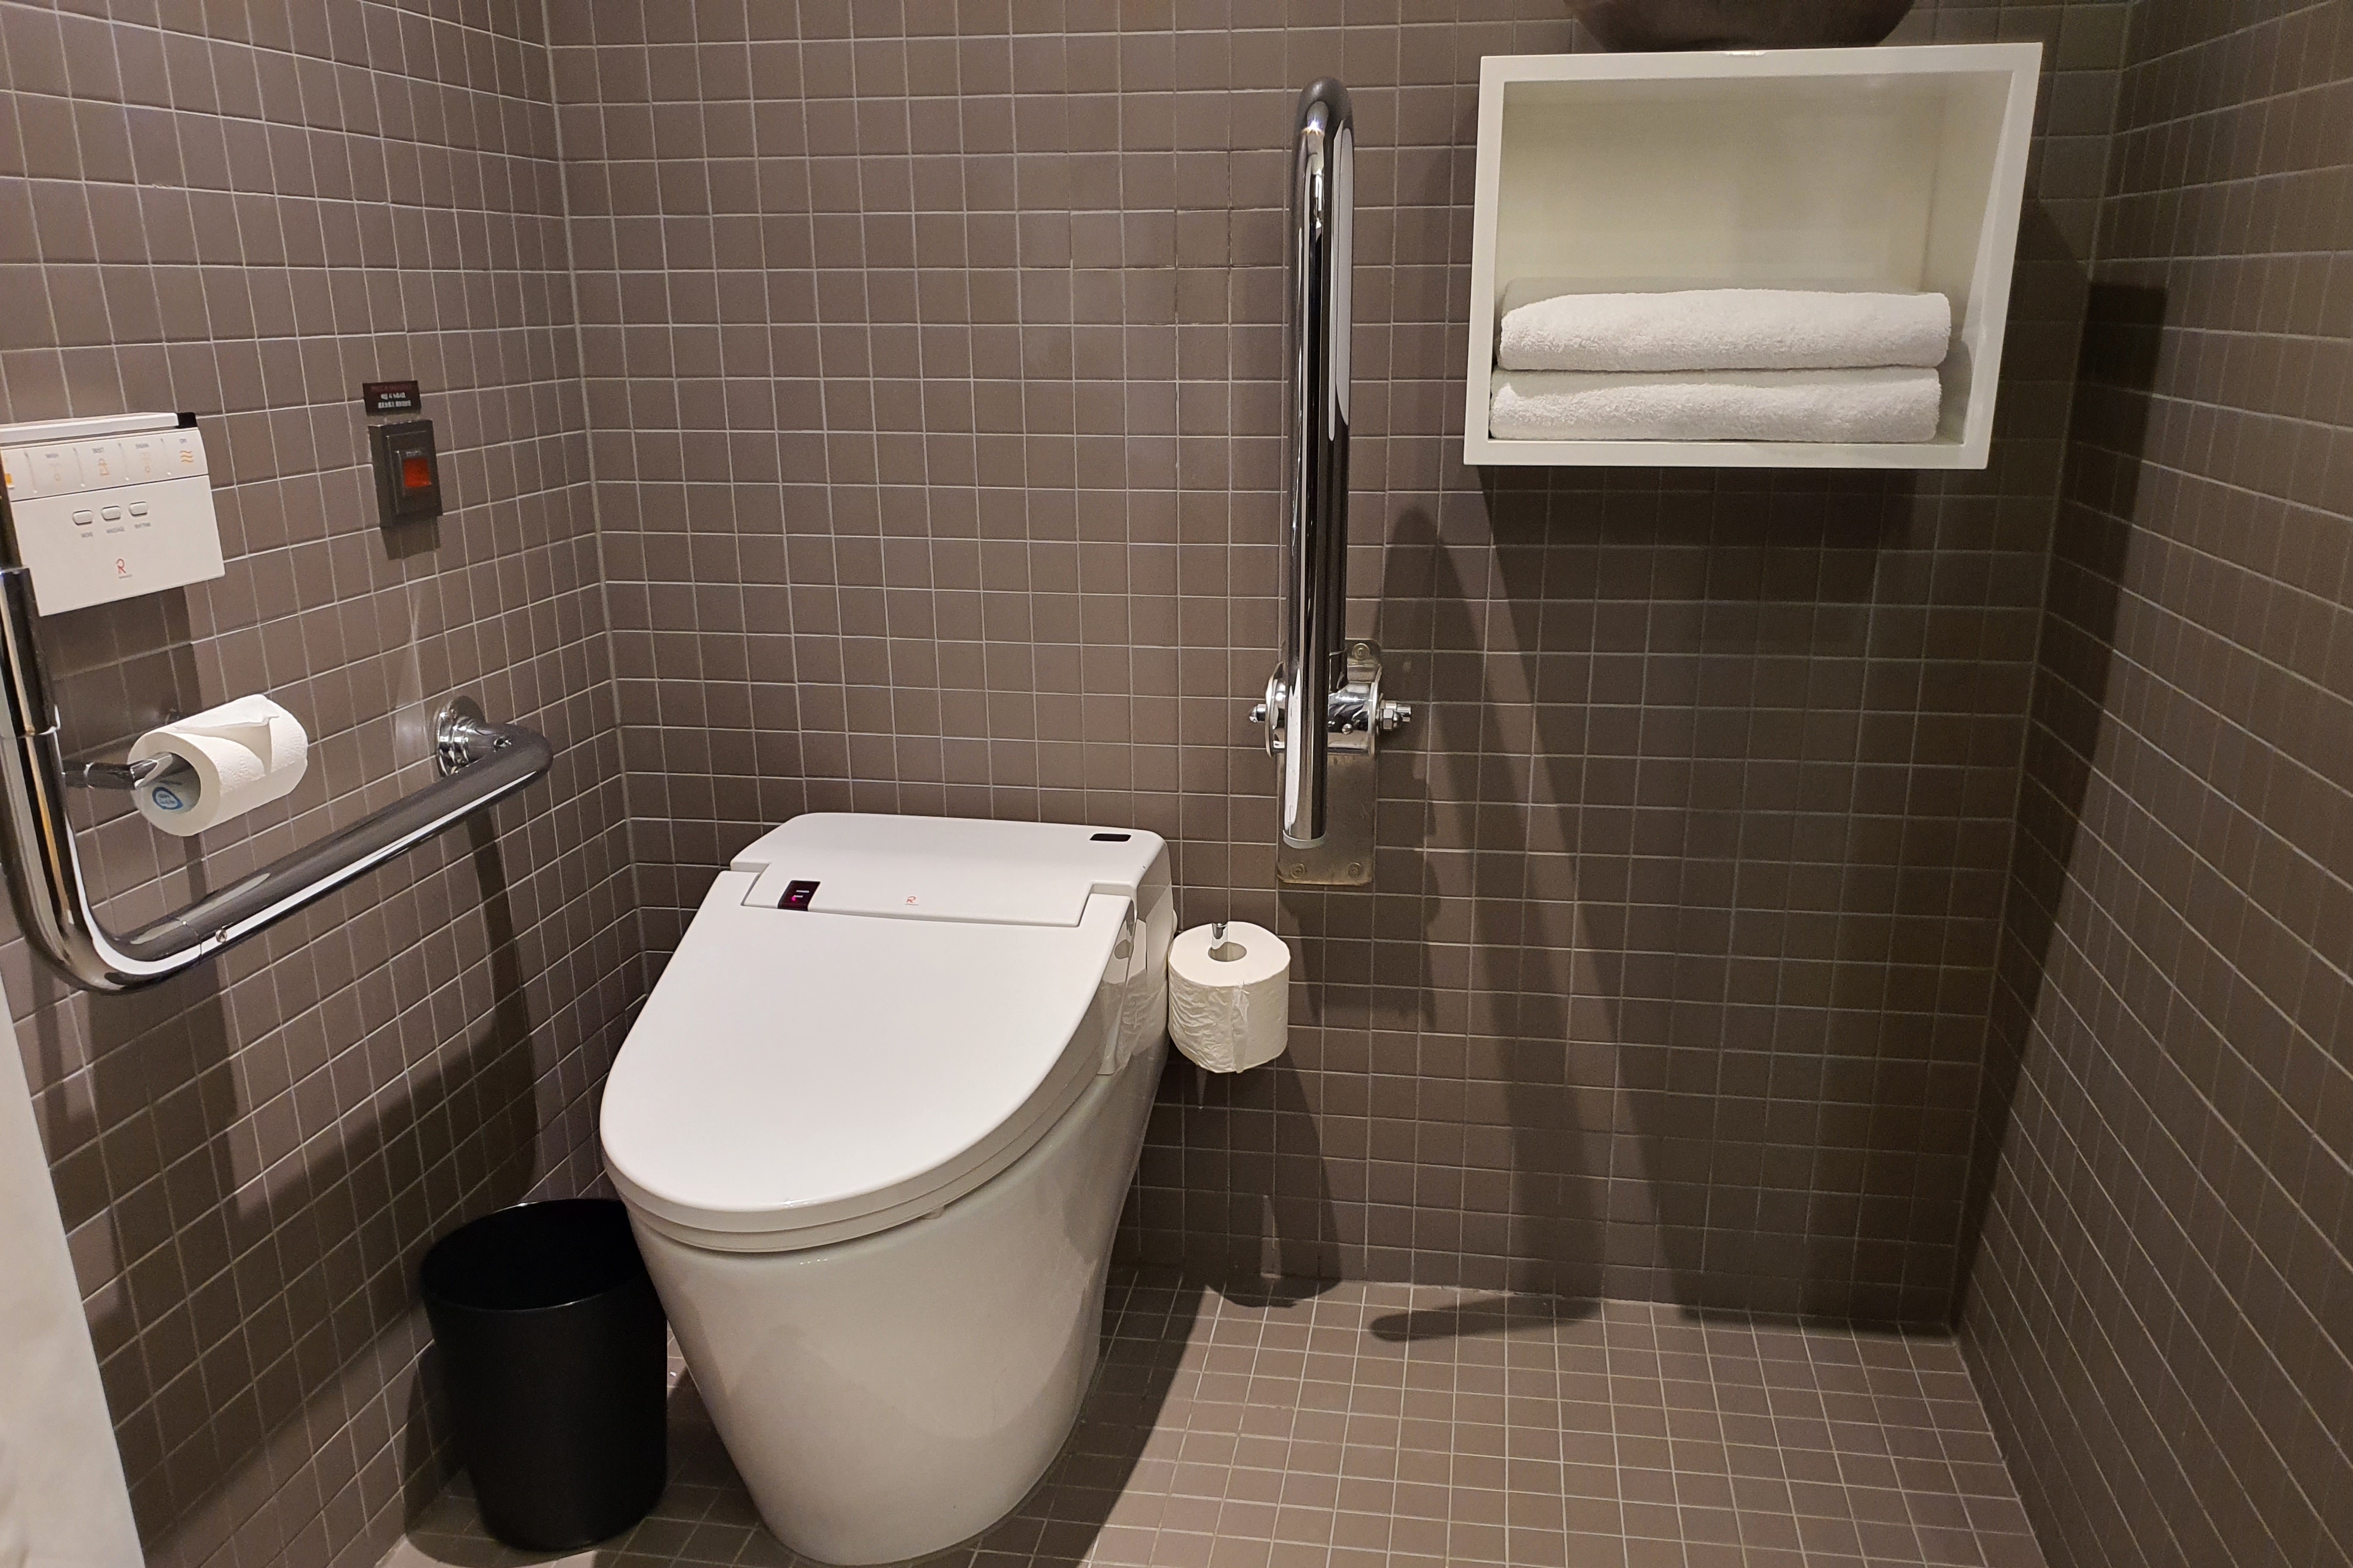 객실 화장실0 : 깨끗하게 정리된 화장실 내부